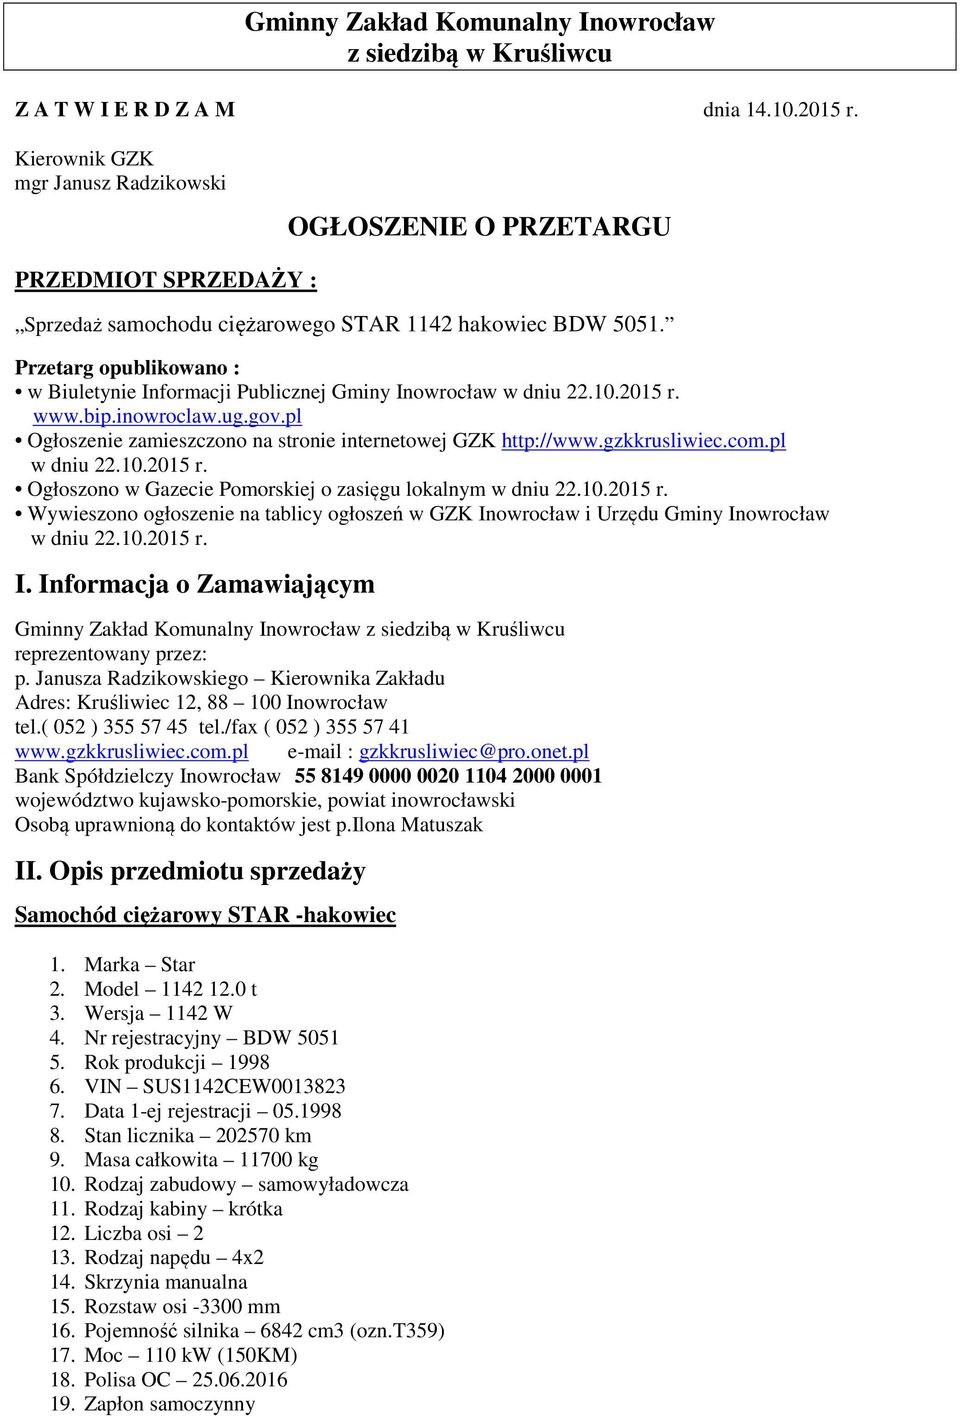 Przetarg opublikowano : w Biuletynie Informacji Publicznej Gminy Inowrocław w dniu 22.10.2015 r. www.bip.inowroclaw.ug.gov.pl Ogłoszenie zamieszczono na stronie internetowej GZK http://www.